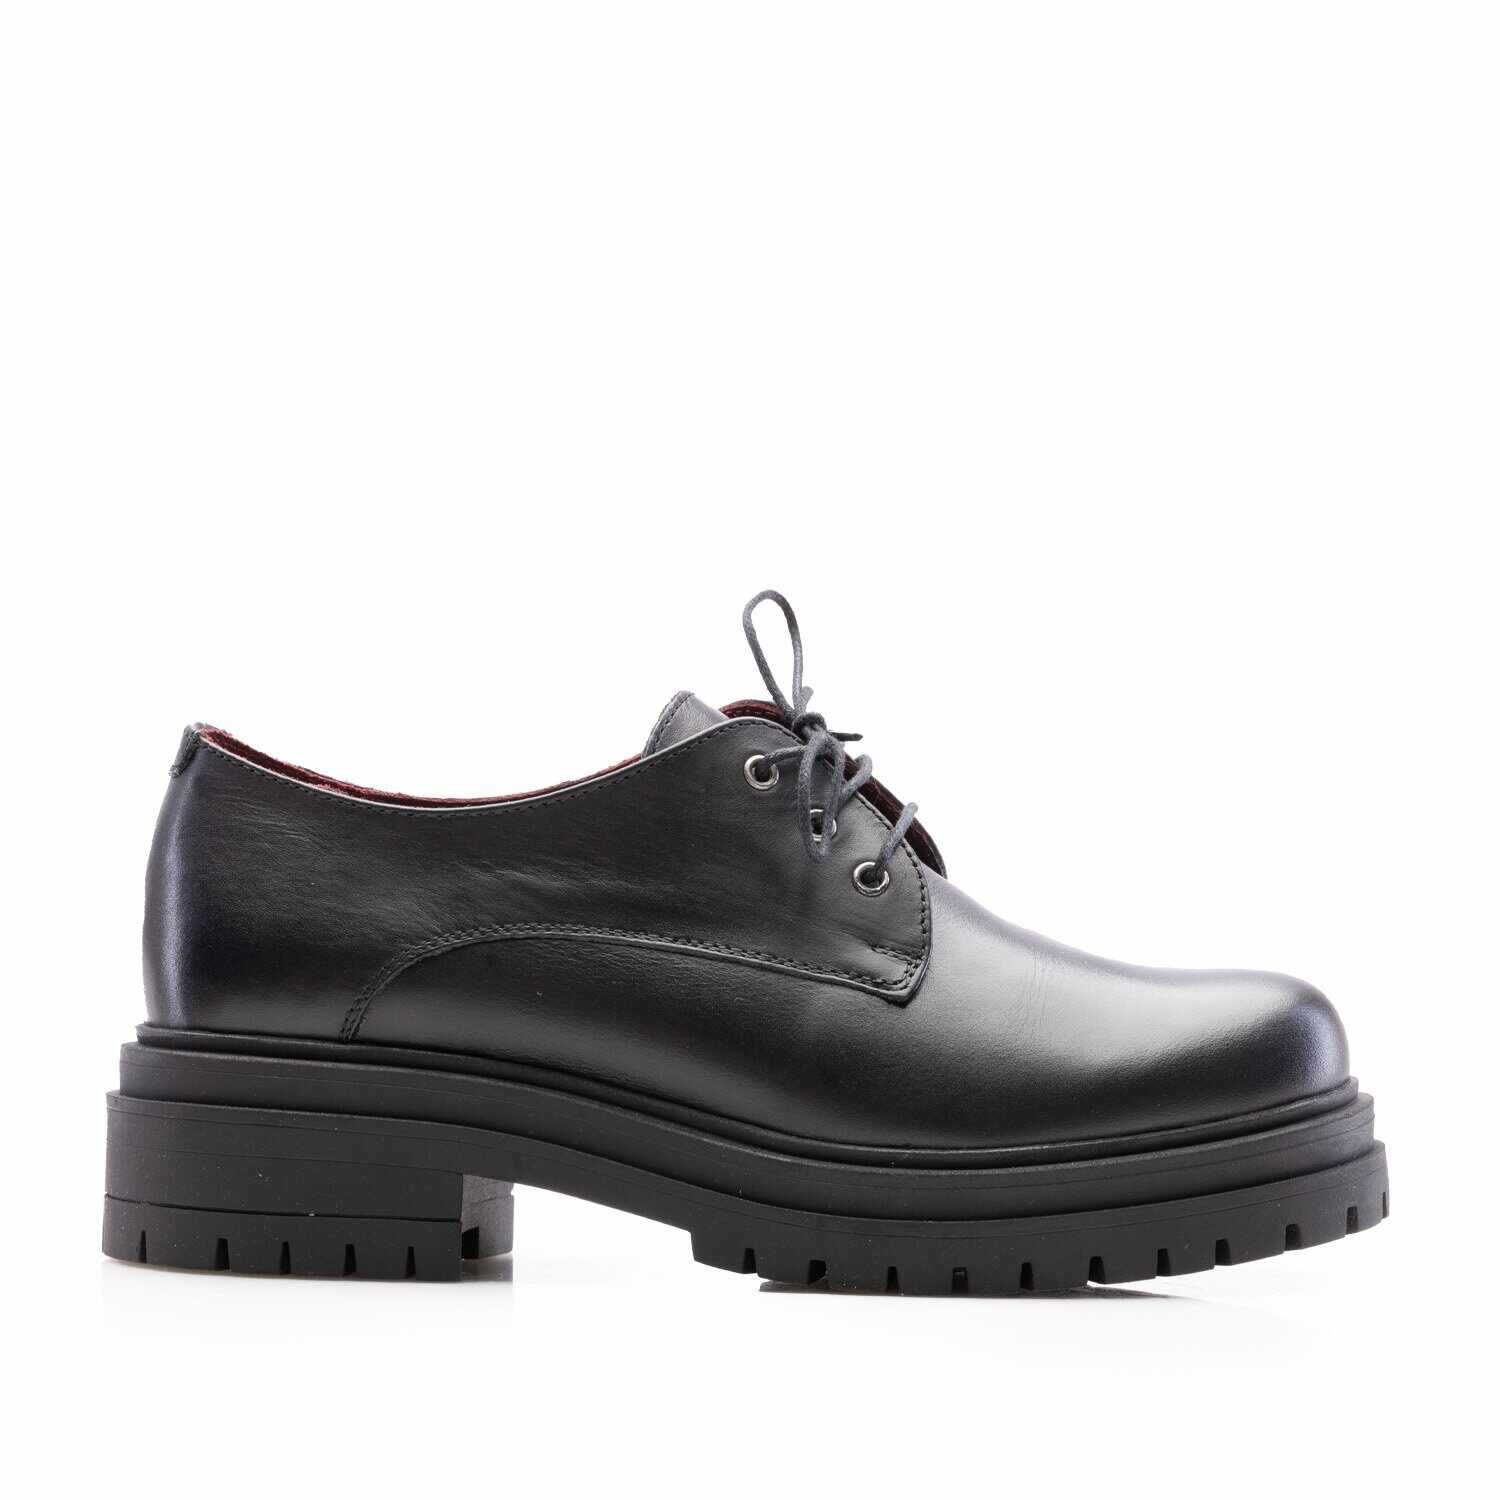 Pantofi casual damă din piele naturală,Leofex - 347-1 Negru Box